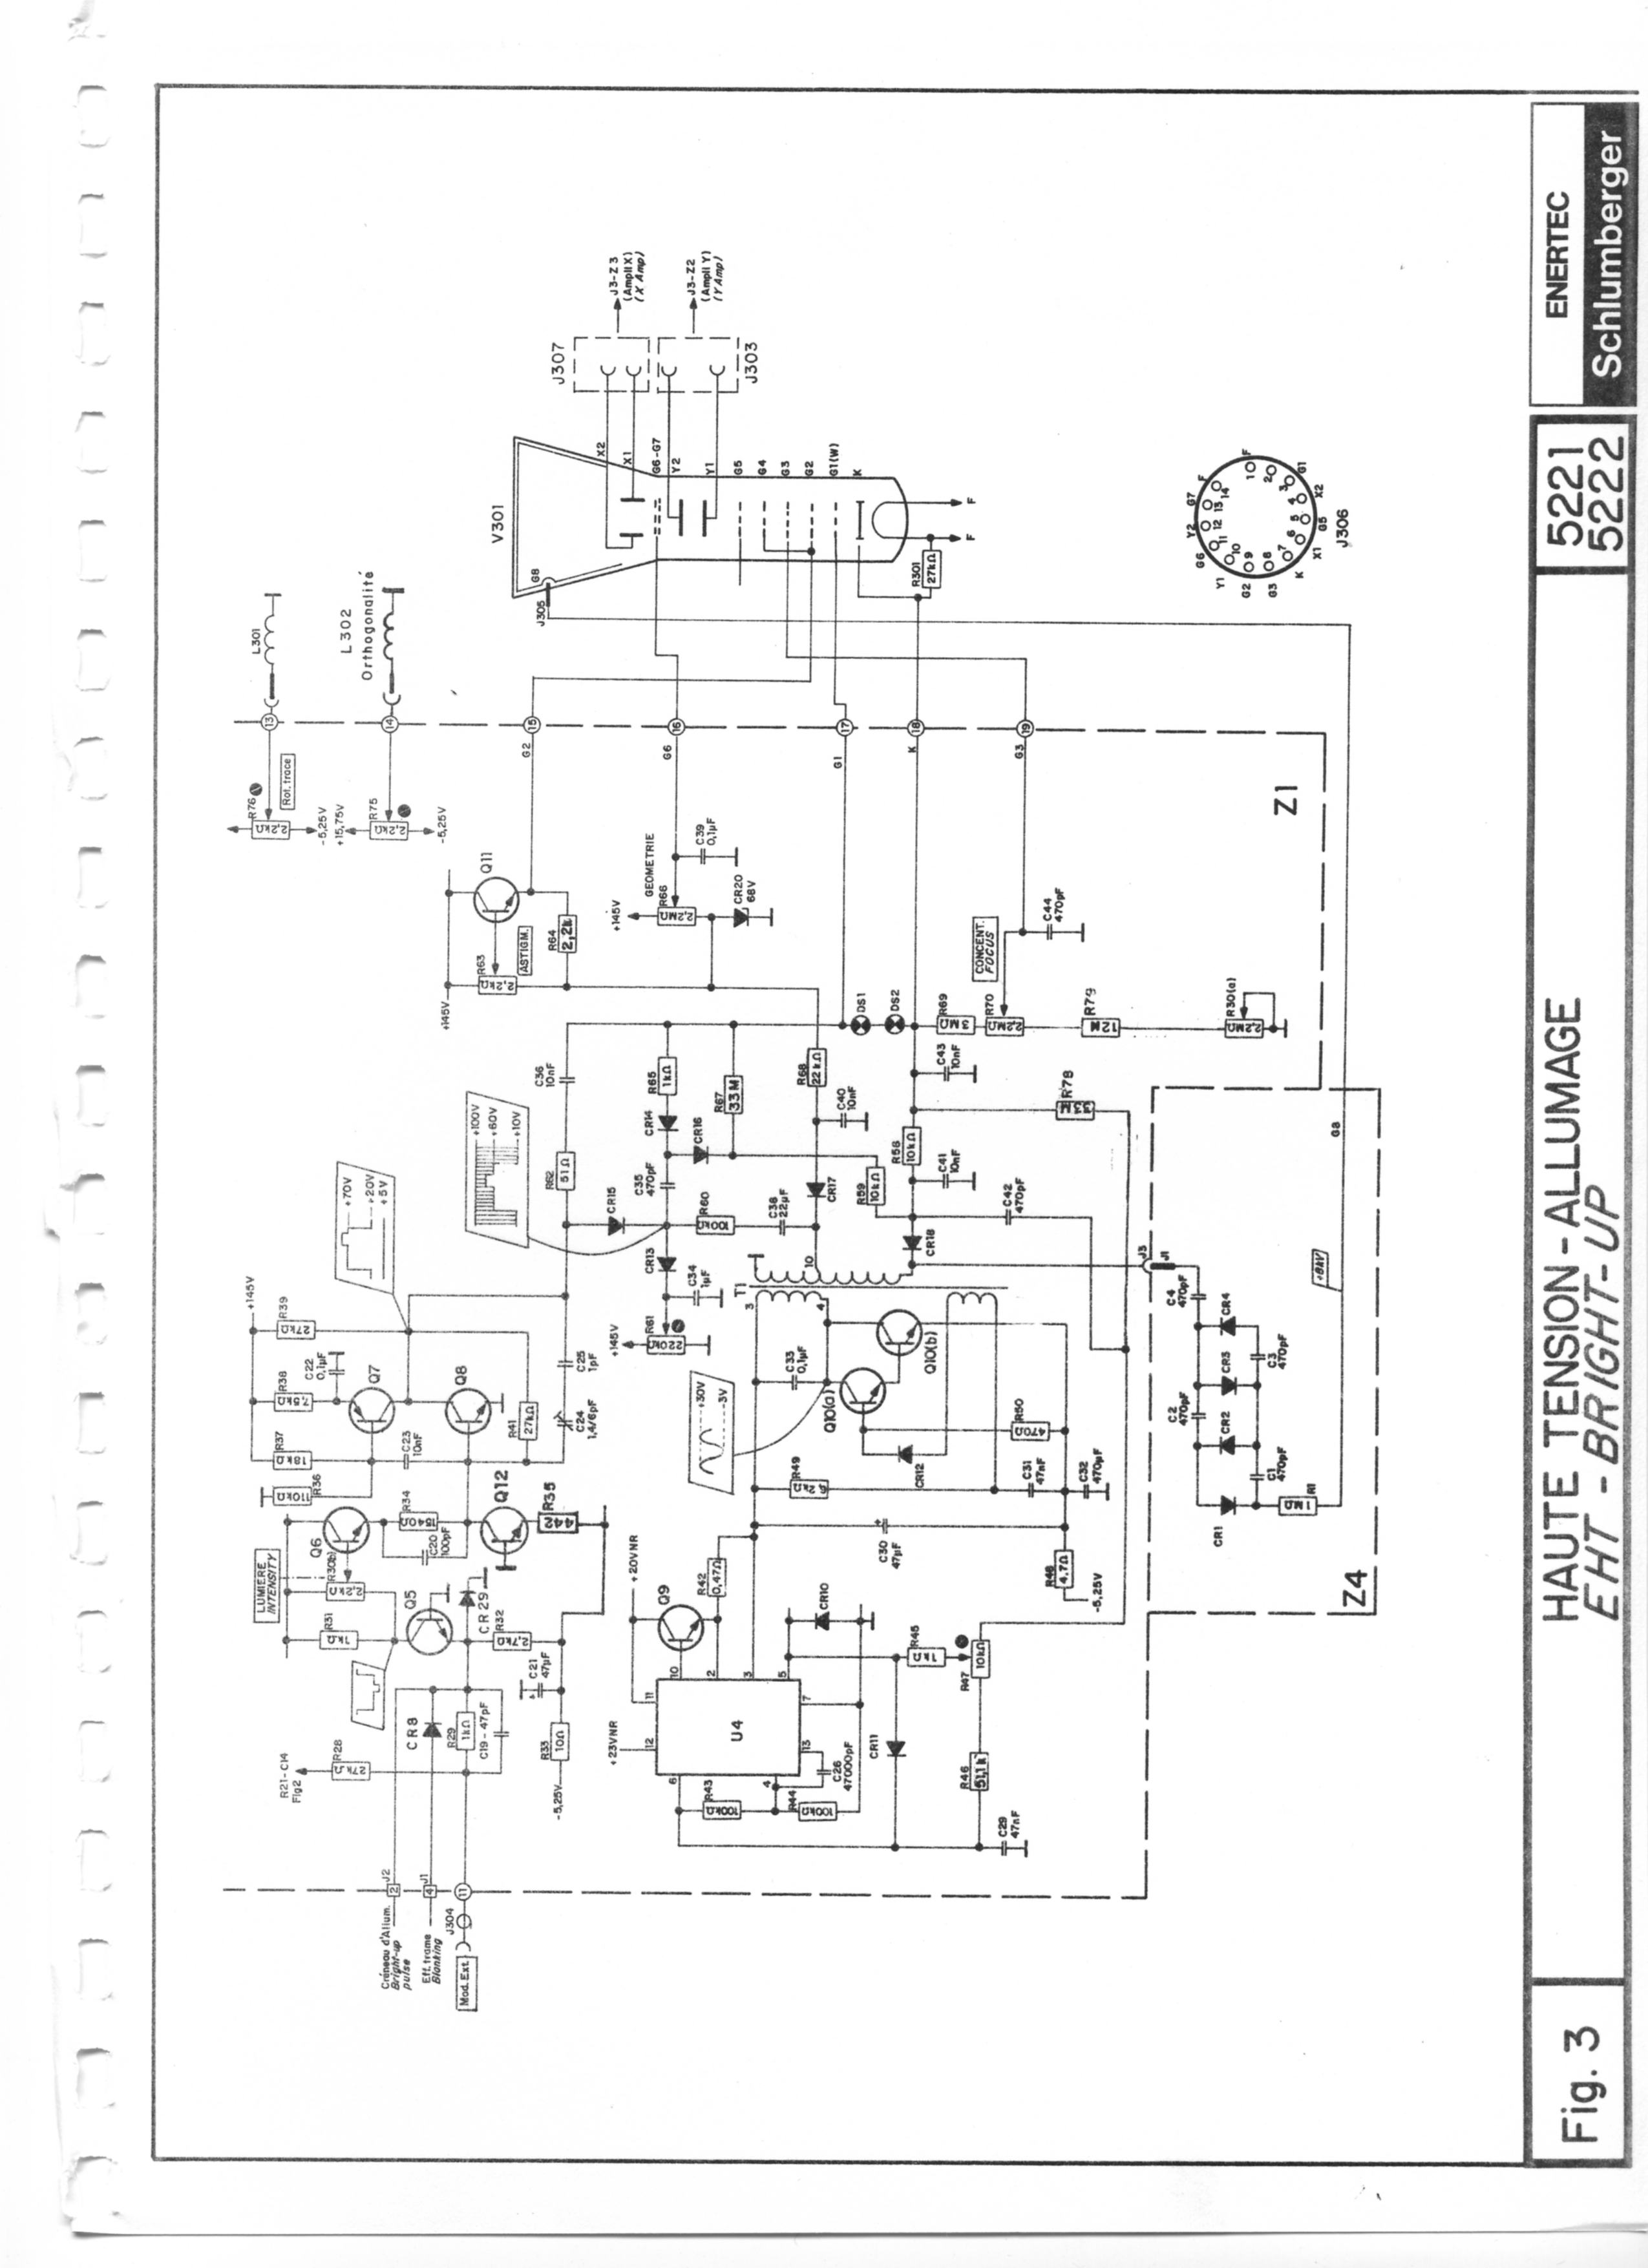 schlumberger 5222 schema oscilloscope schlumberger 5222